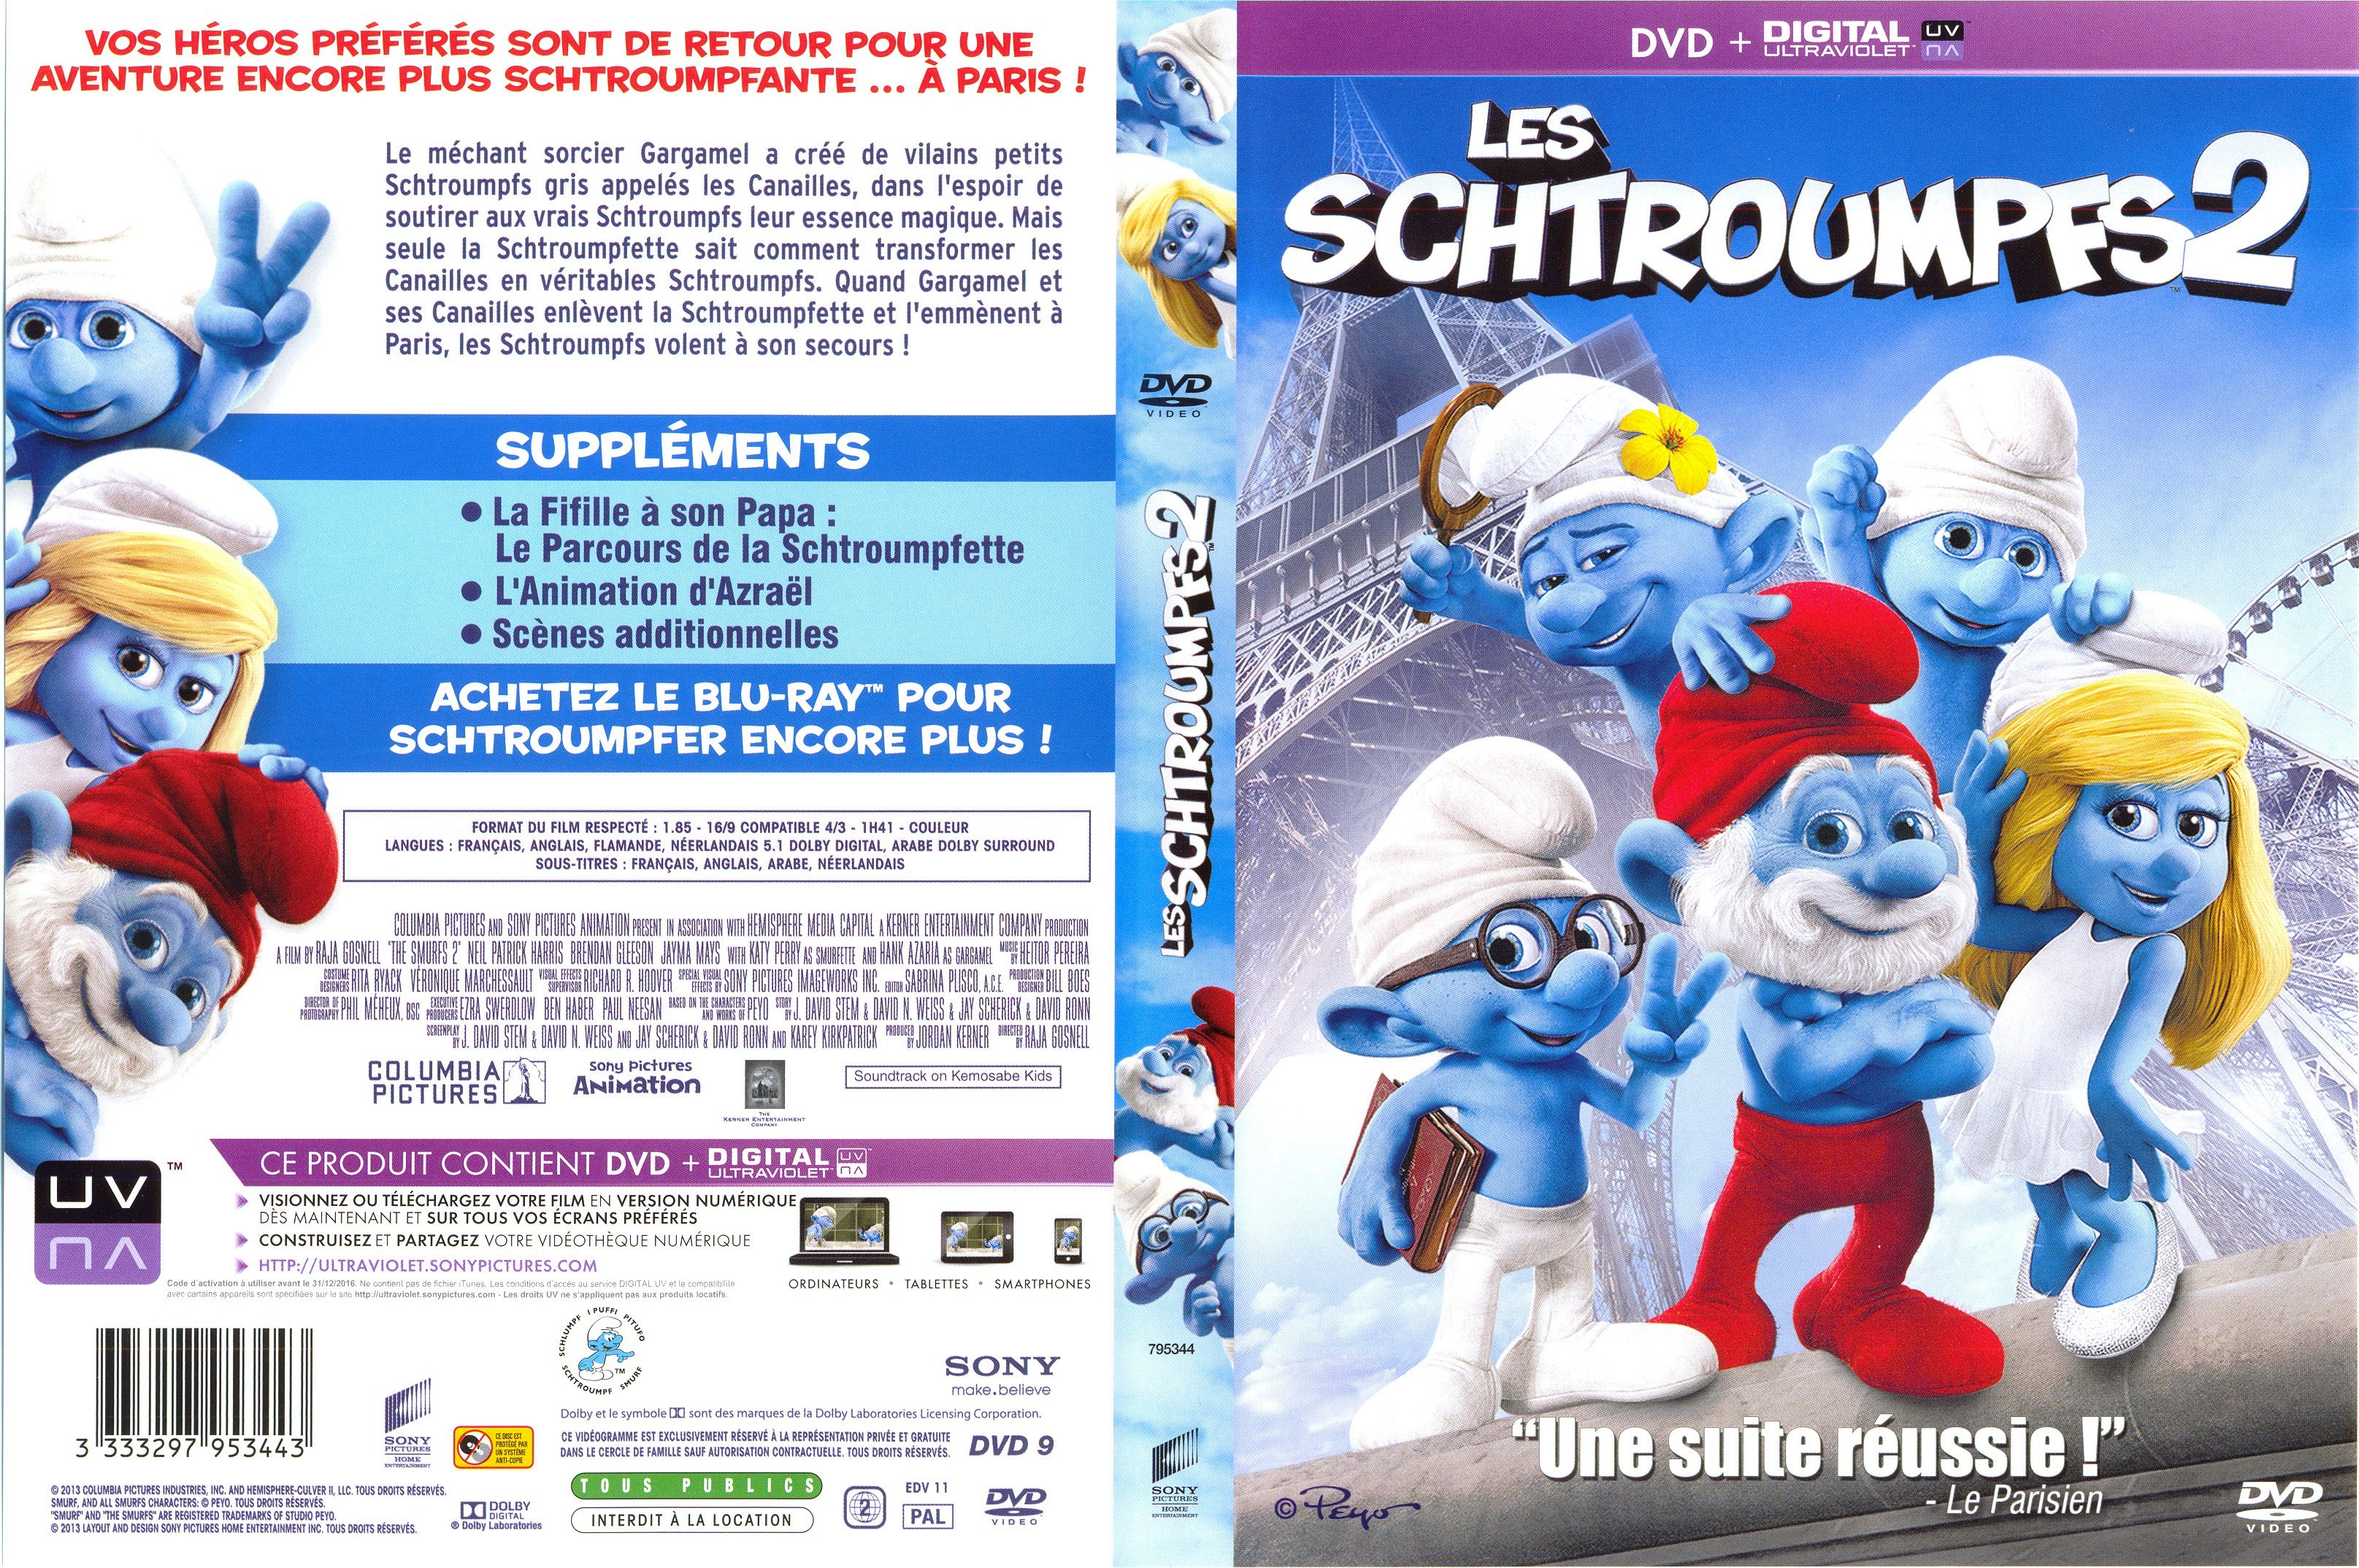 Jaquette DVD Les Schtroumpfs 2